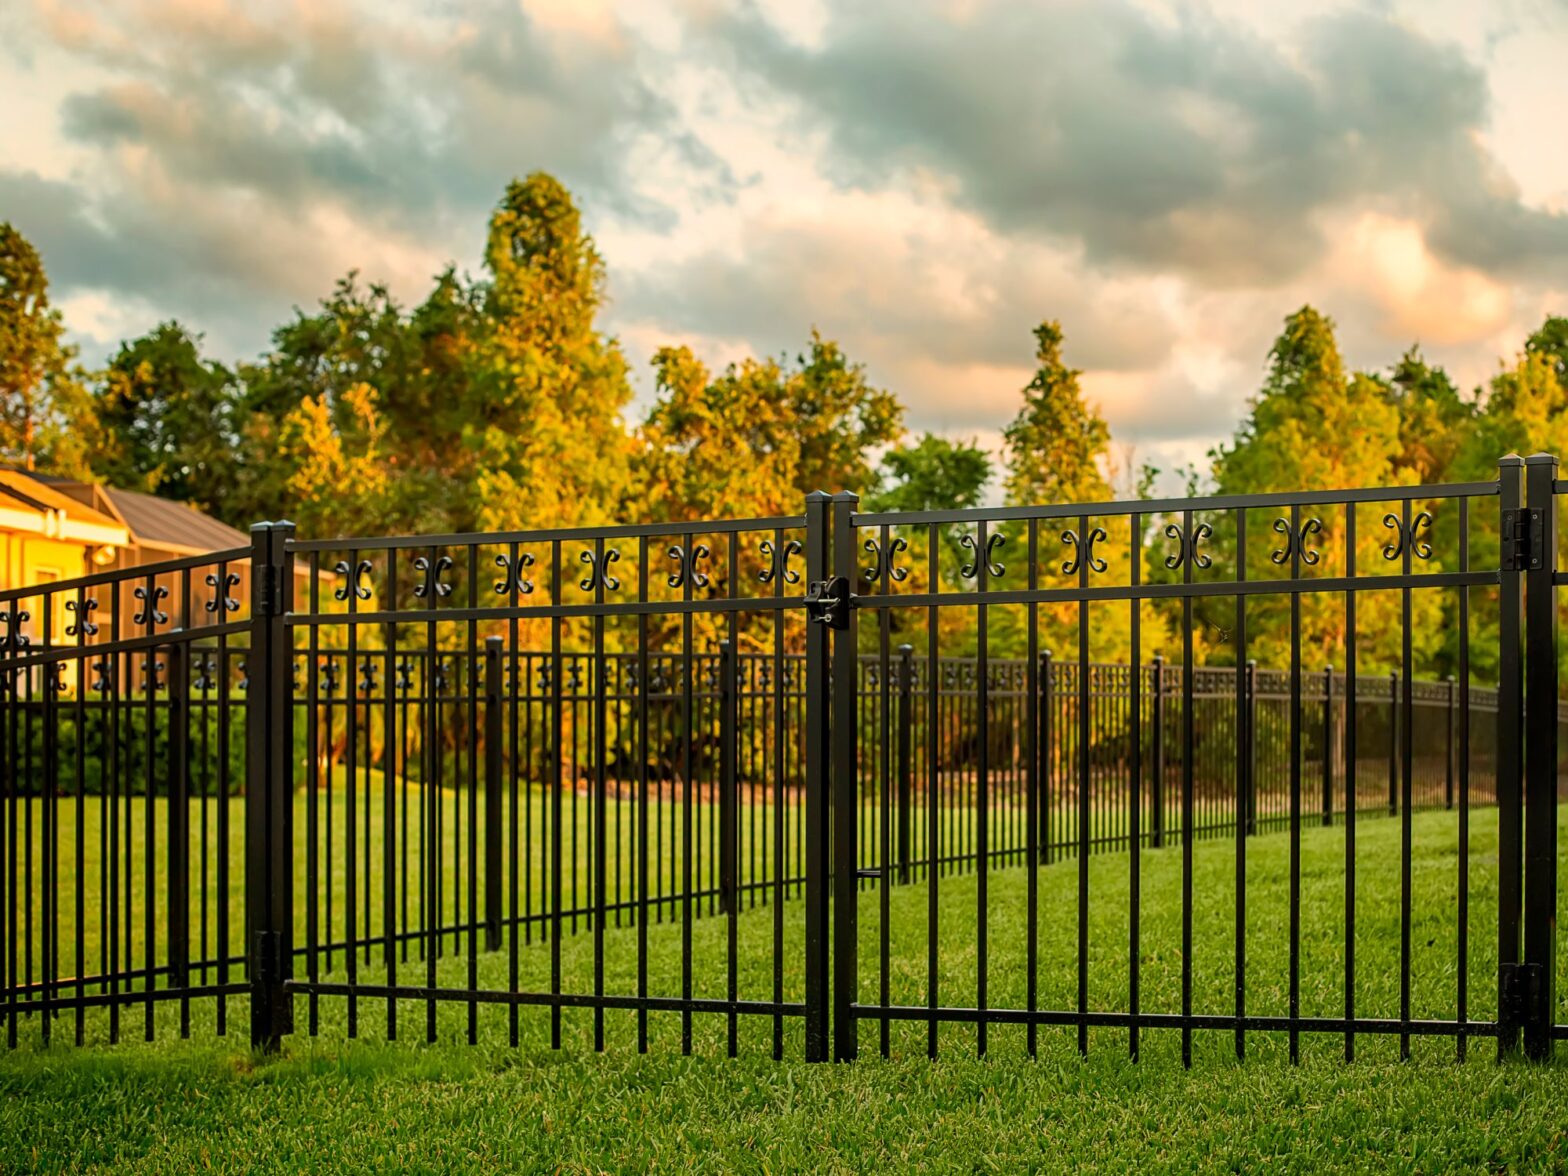 Photo of a Columbia South Carolina aluminum fence